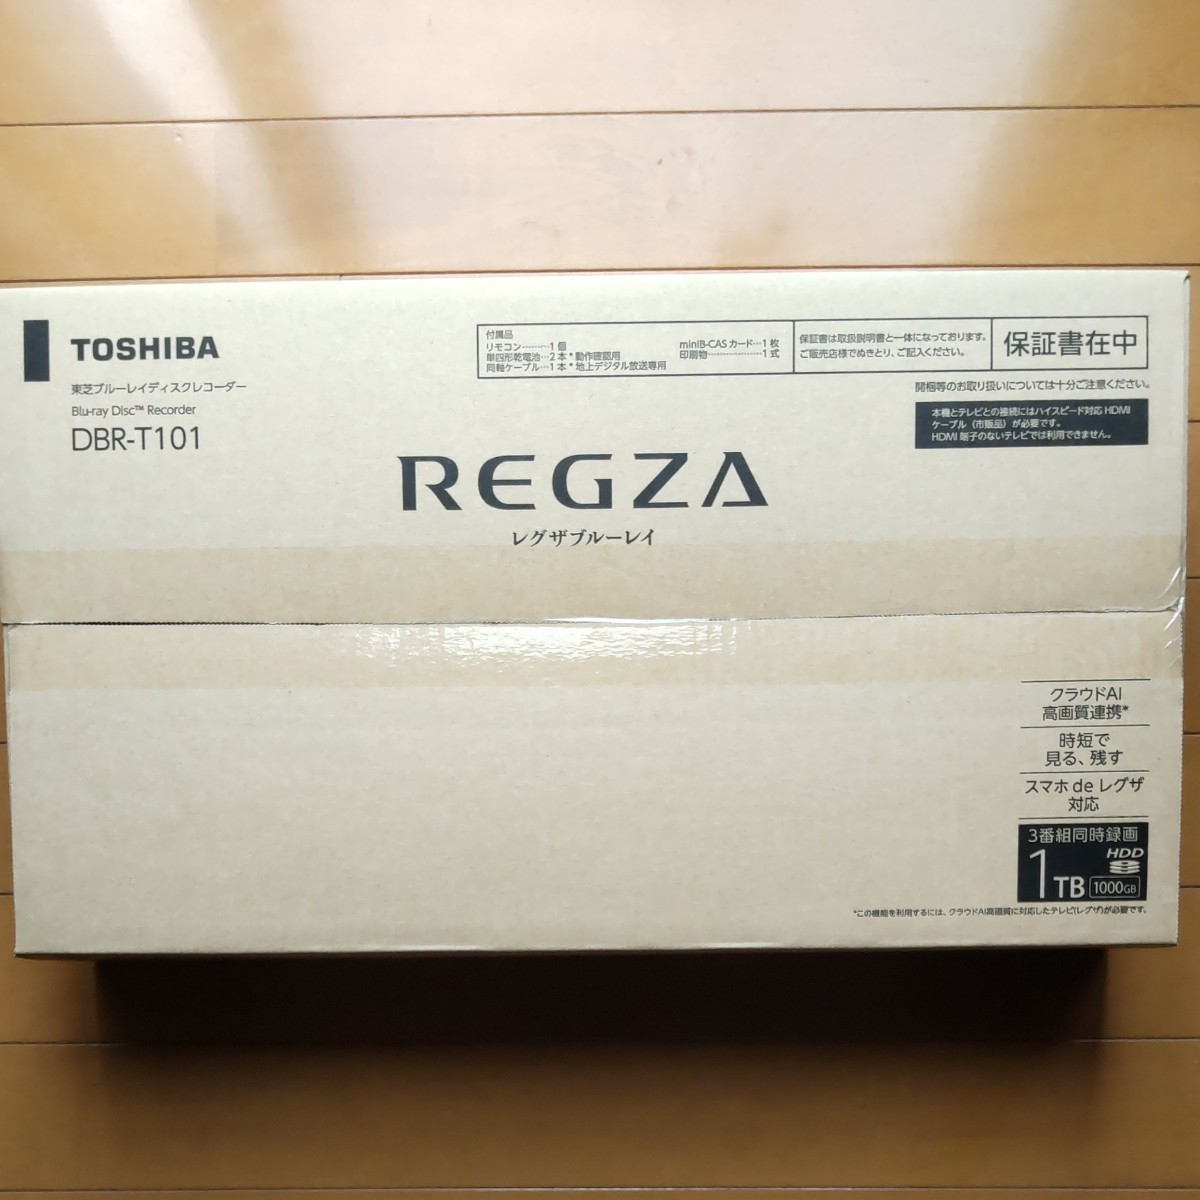 【新品未開封】東芝REGZA DBR-T101 3D対応ブルーレイレコーダー HDD1TB3番組同時録画可能 レグザブルーレイ